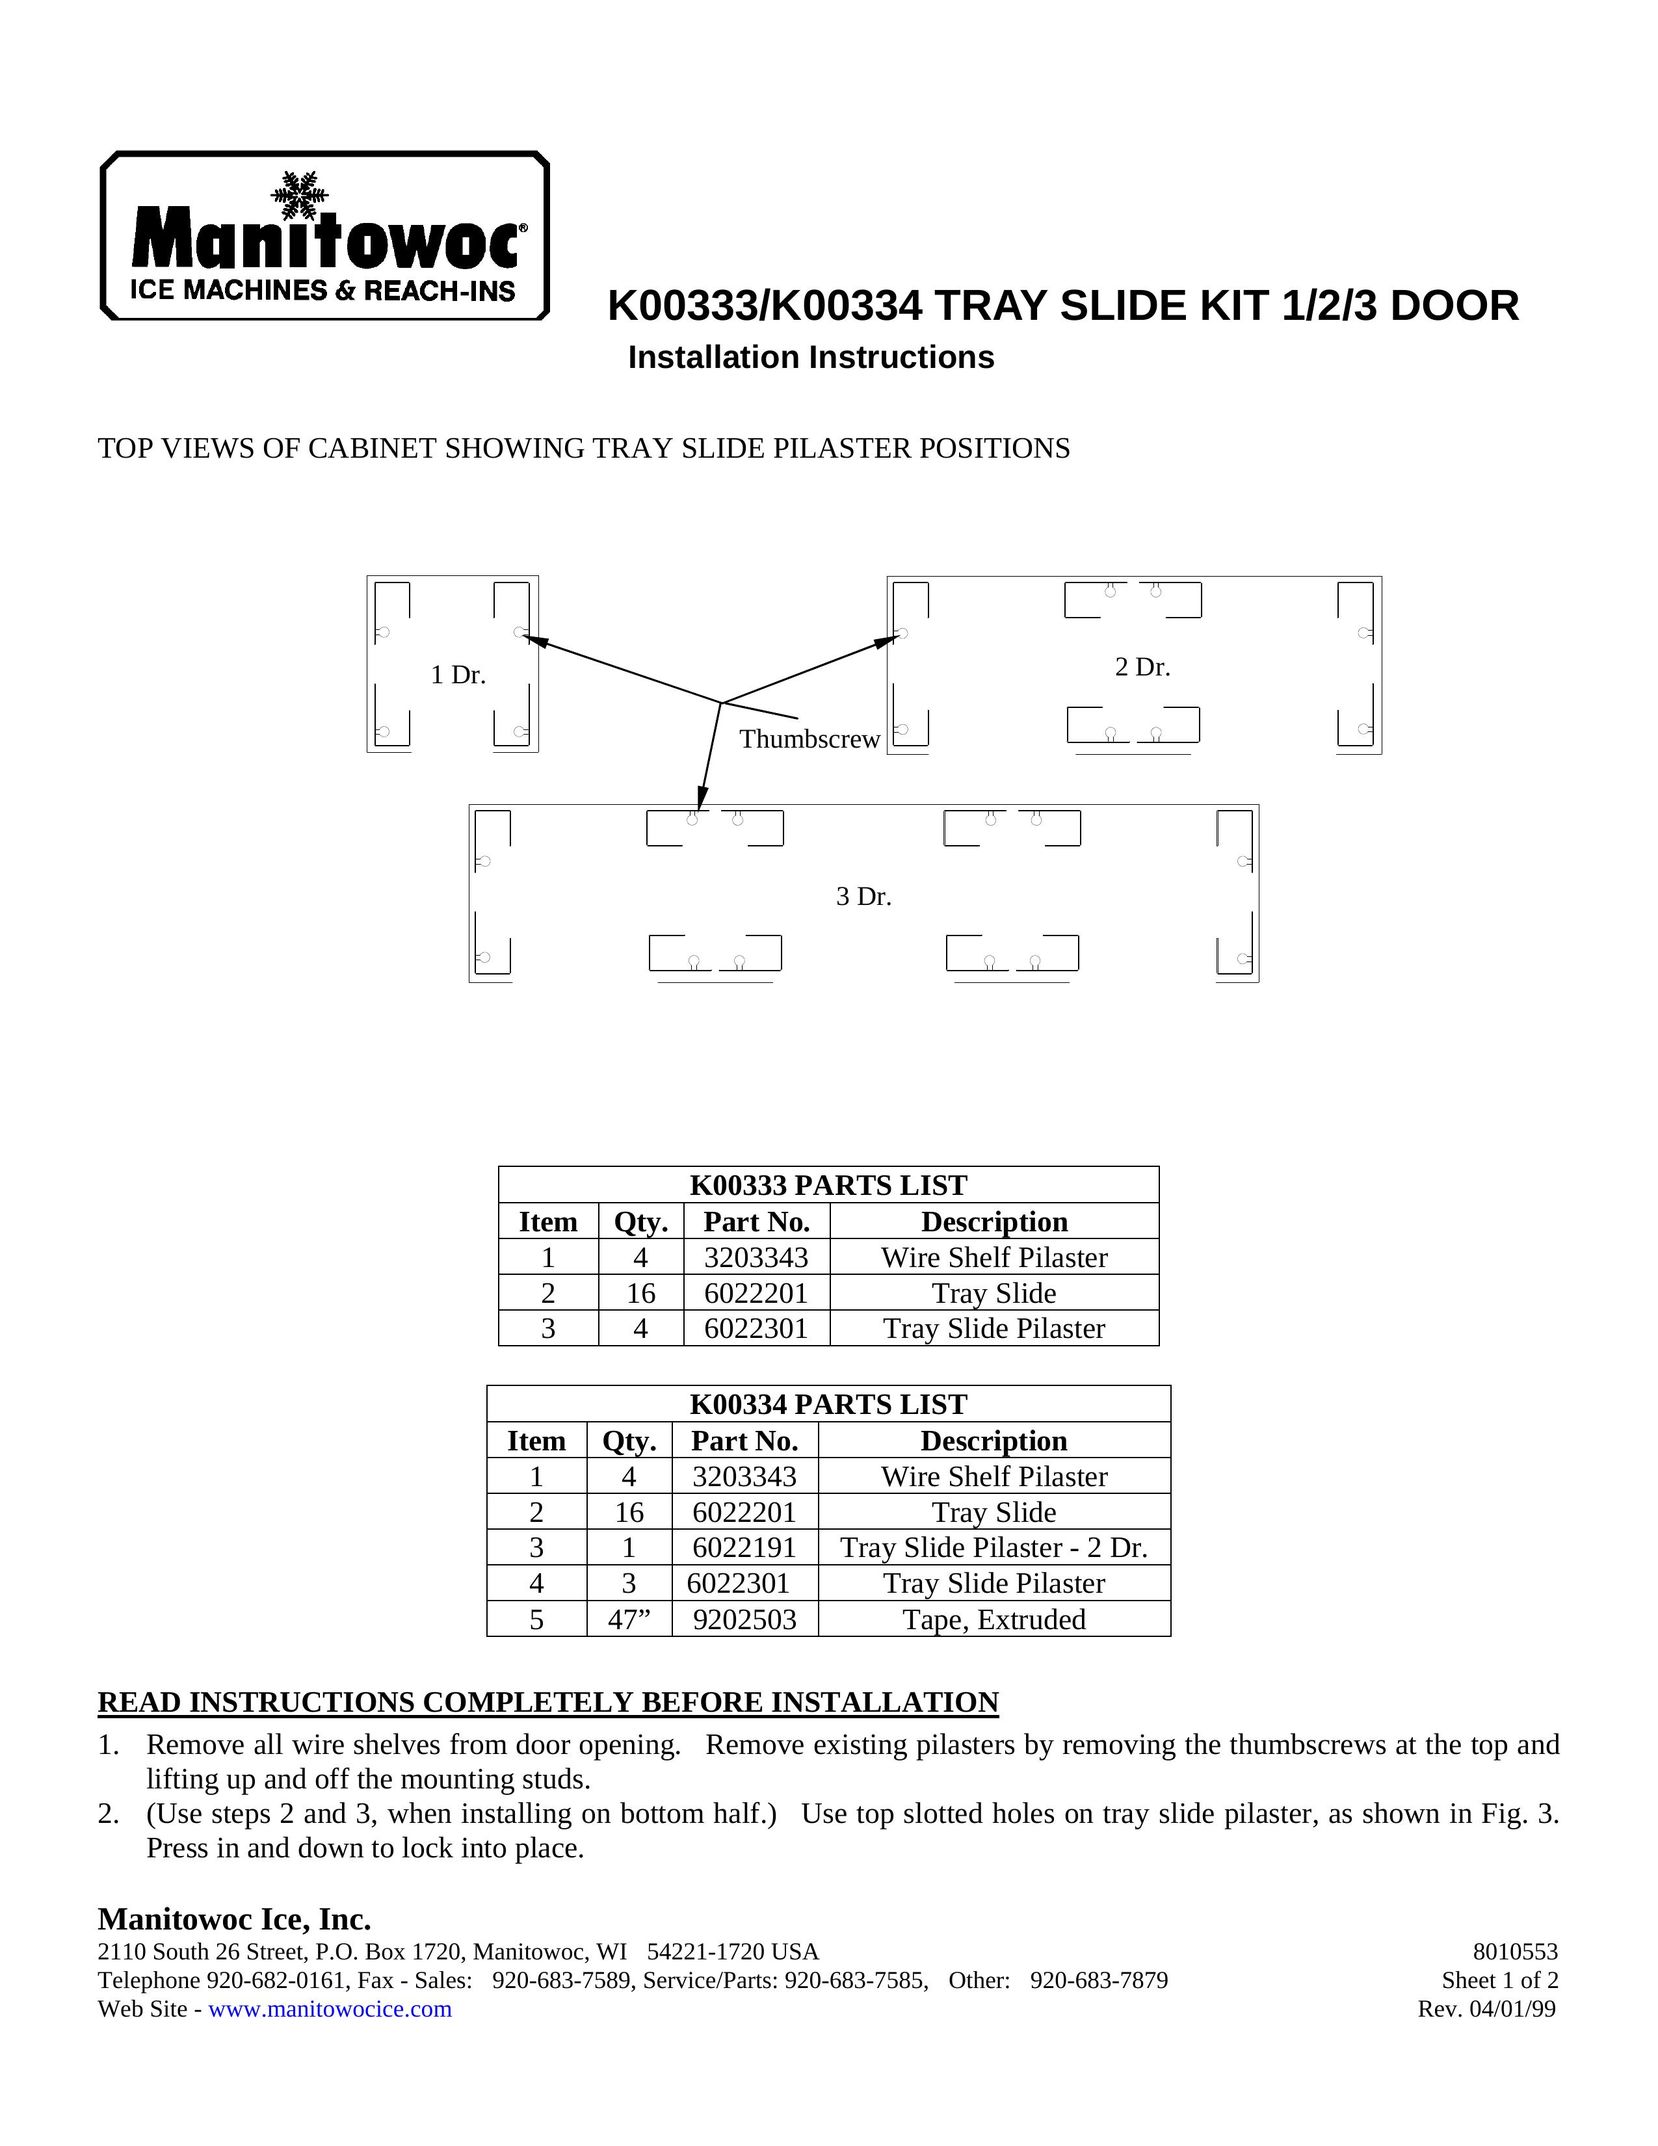 Manitowoc Ice K00334 Baby Furniture User Manual